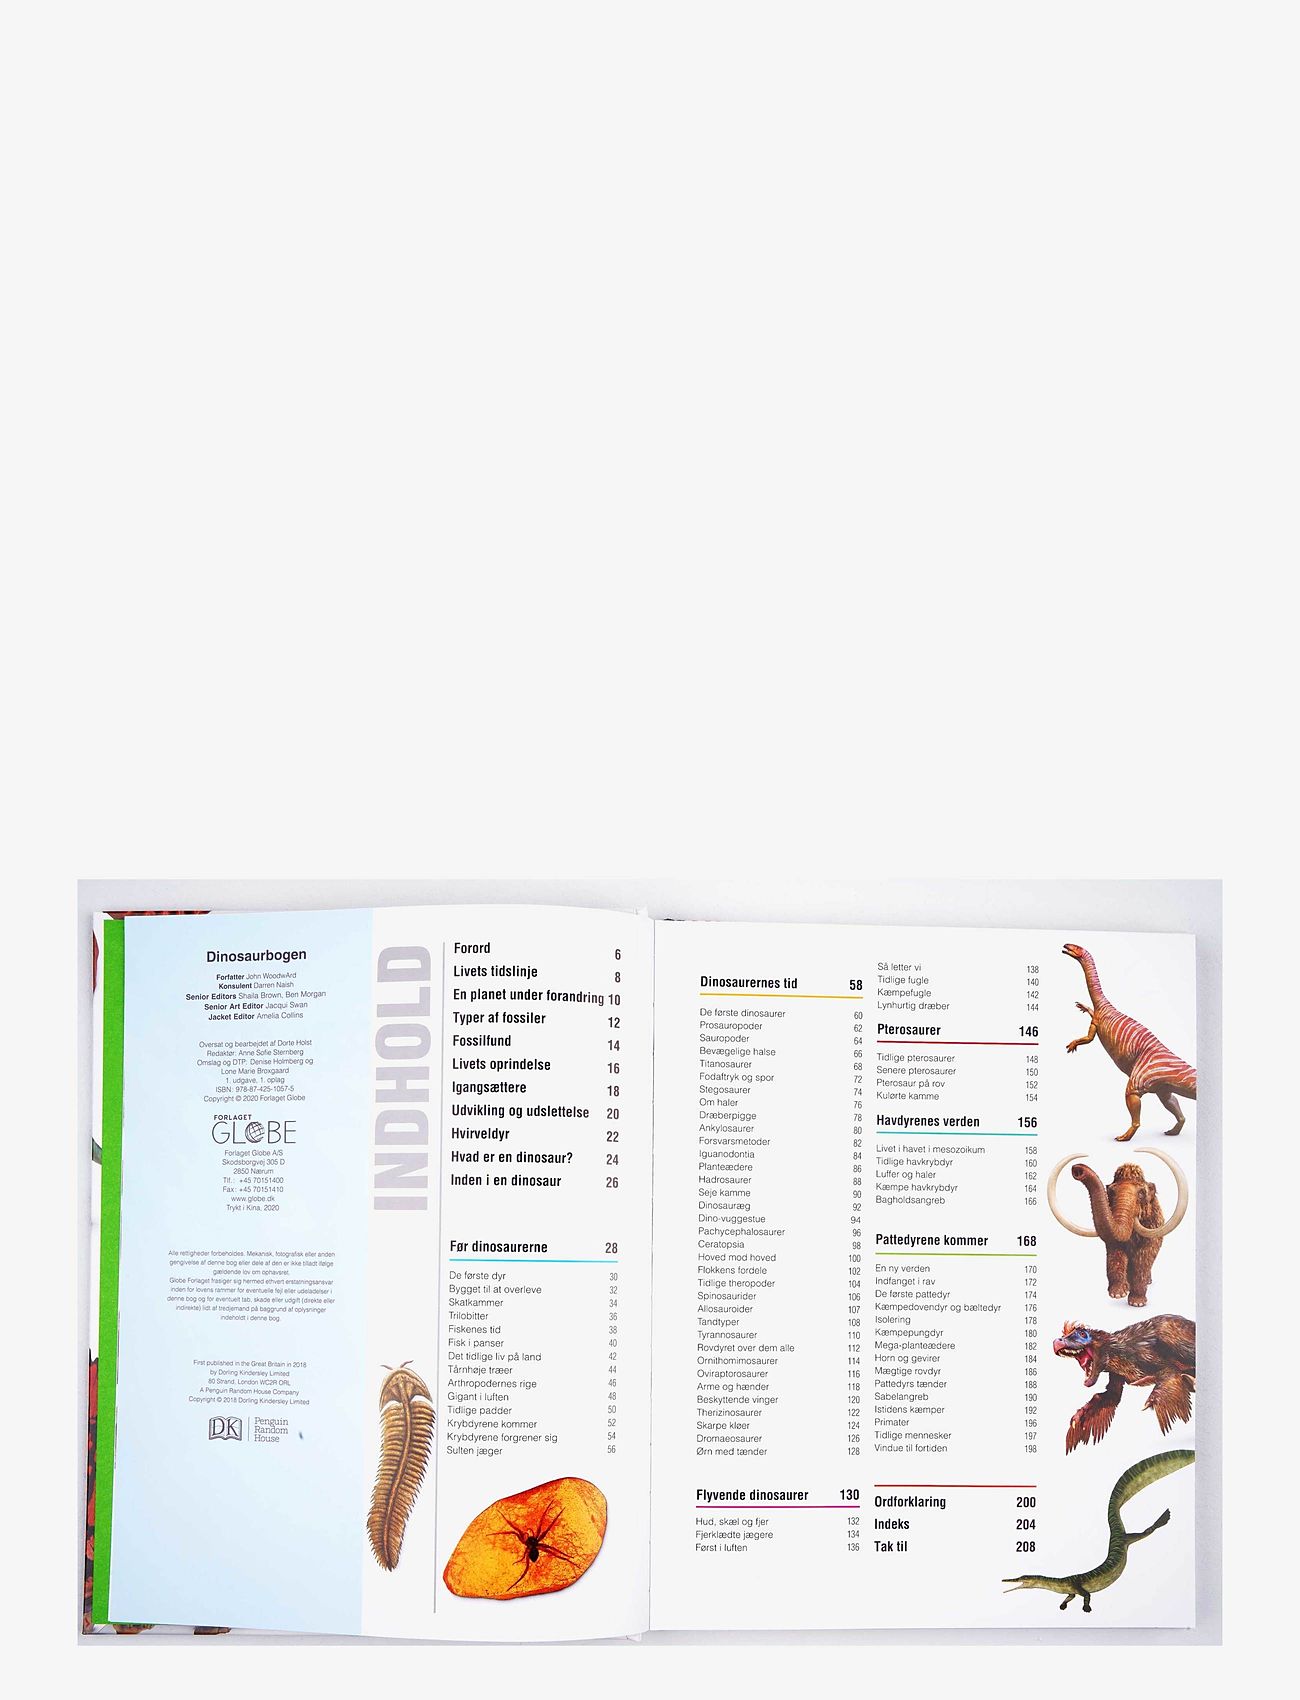 GLOBE - Dinosaurbogen - laveste priser - children's book - 1